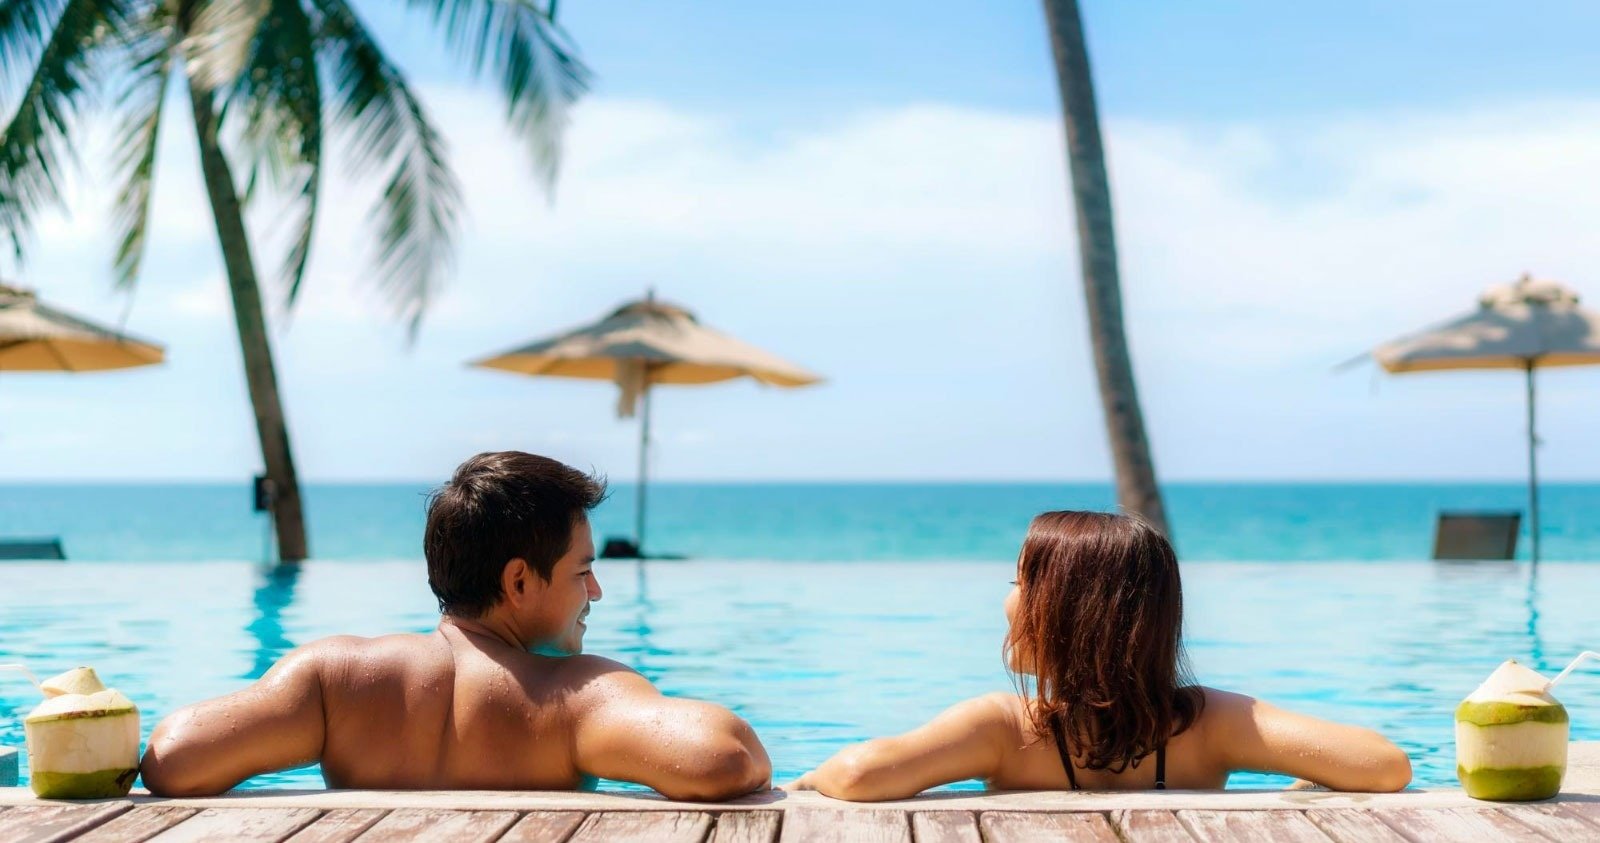 мужчина и женщина сидят в бассейне и смотрят на океан